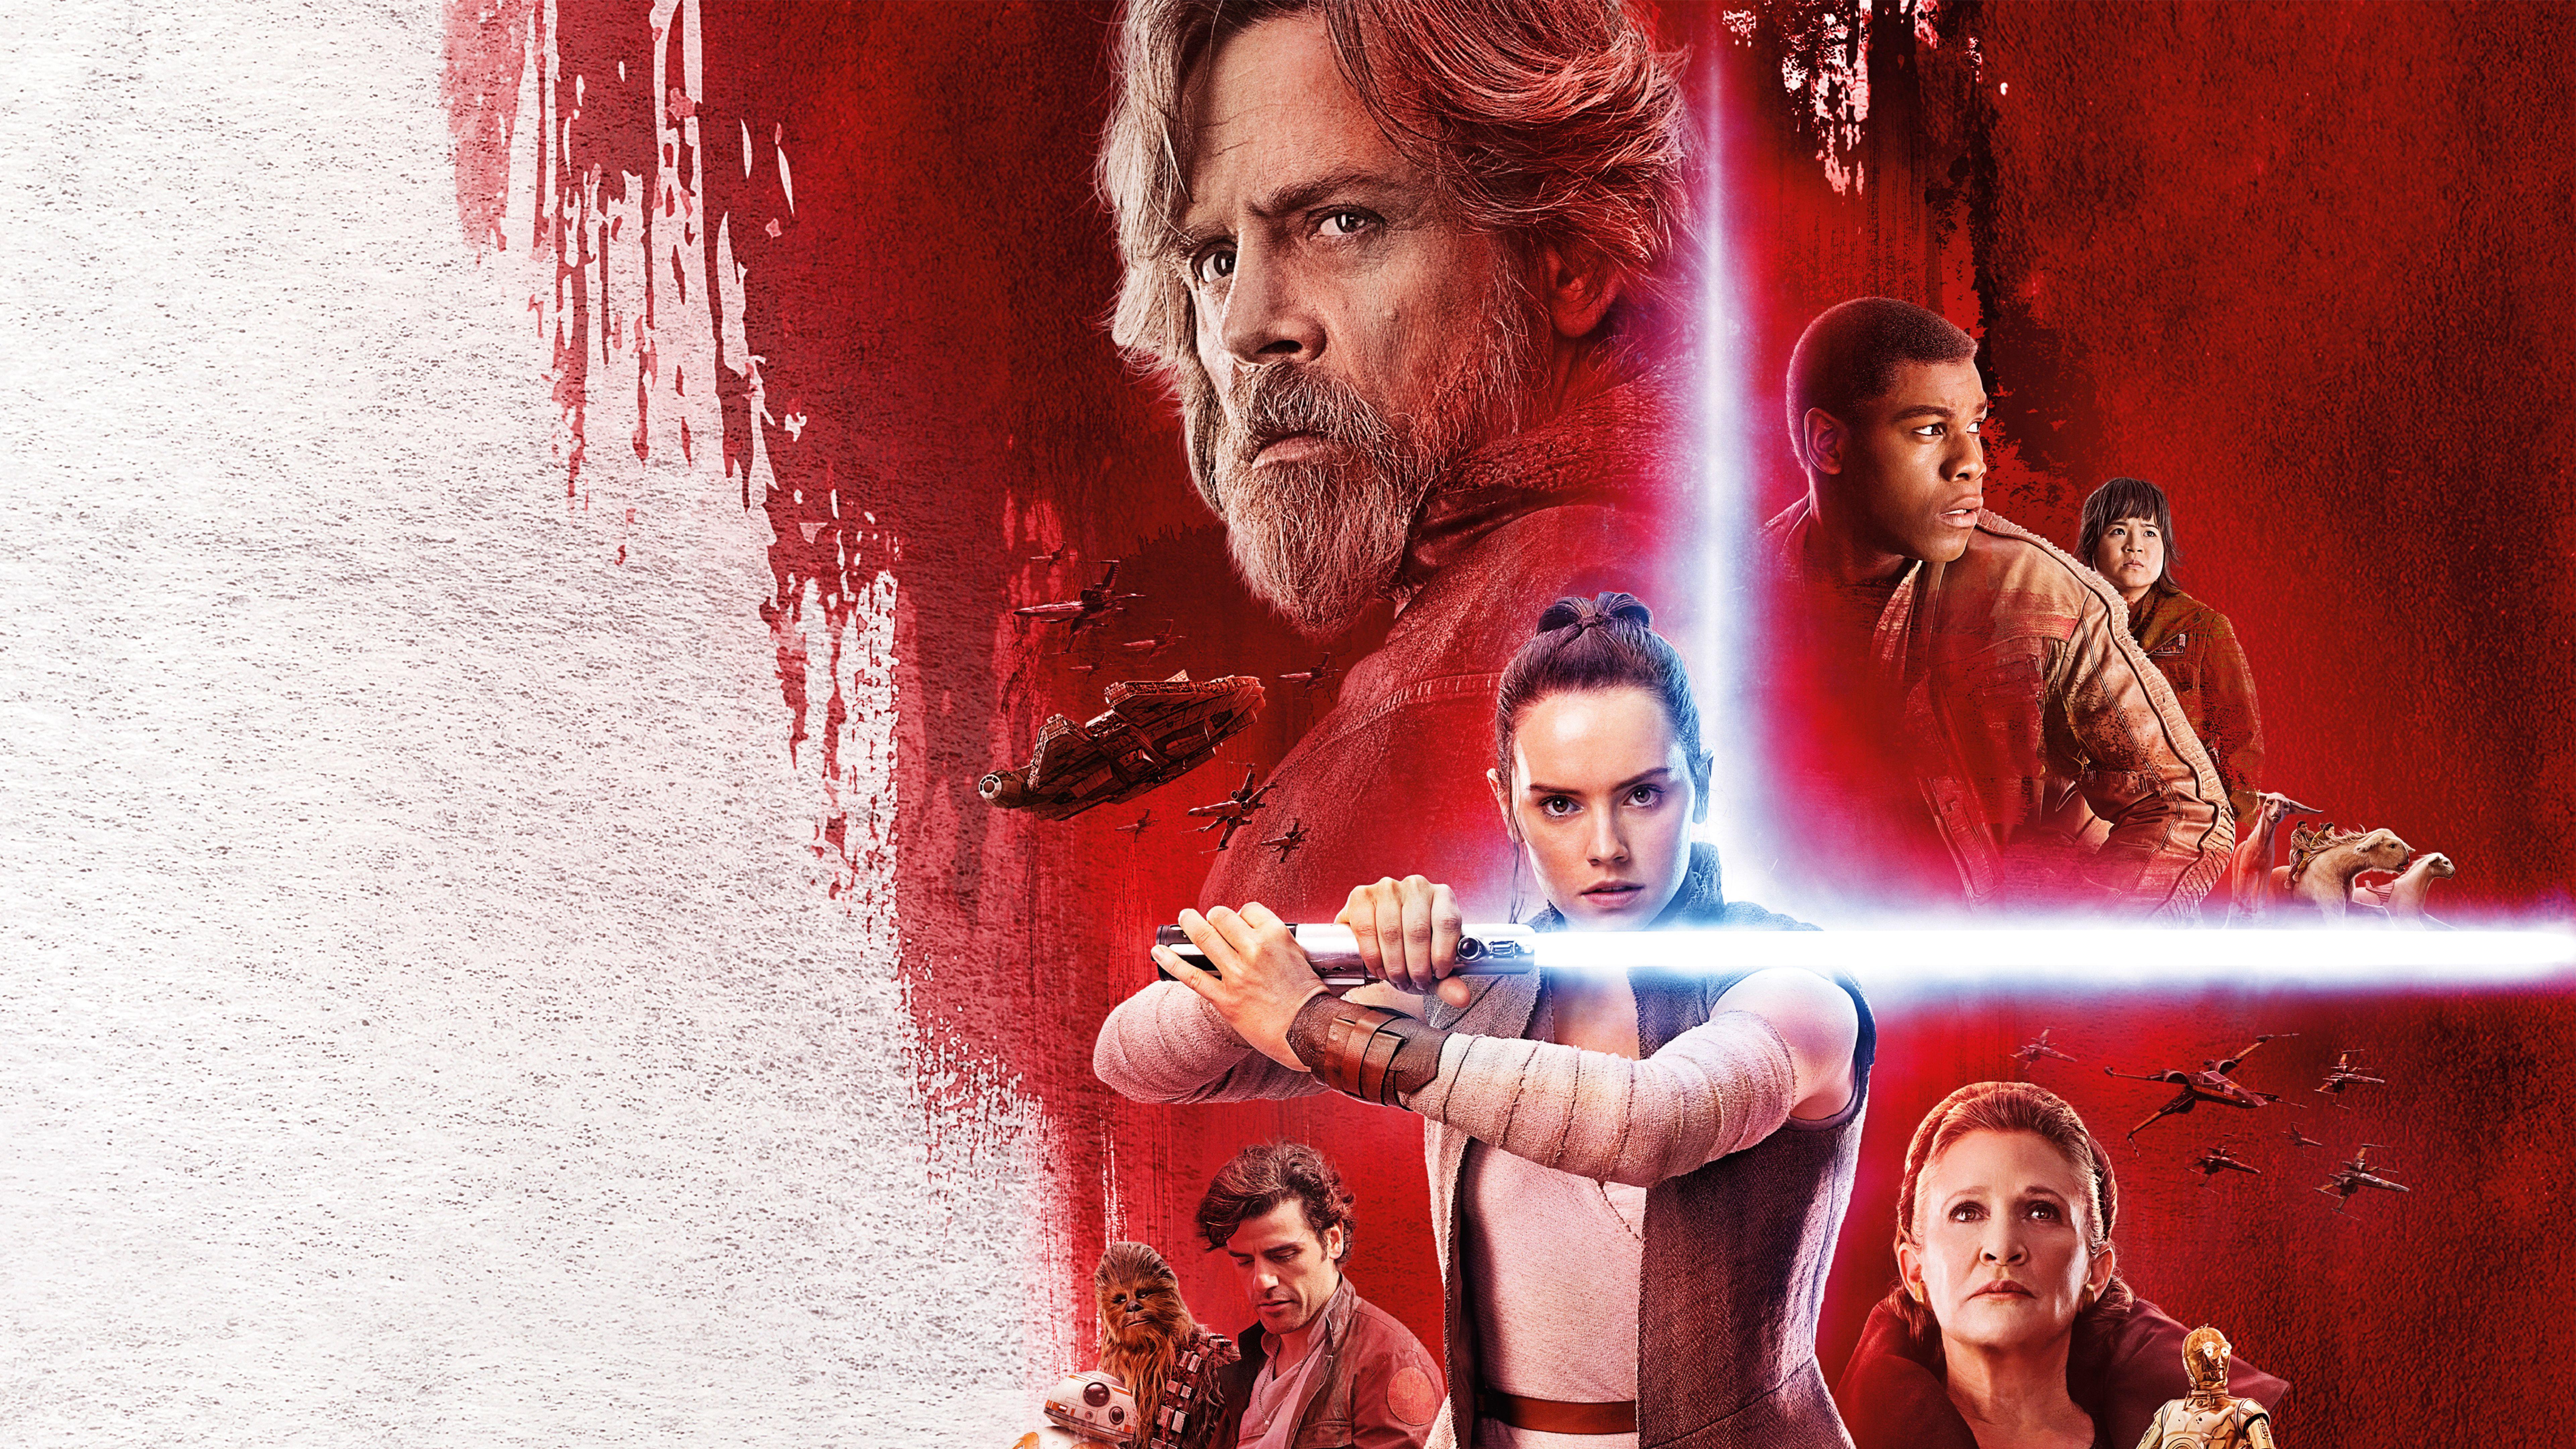 Star Wars 8, The Last Jedi HD Wallpaper, 4K & 8K Star Wars 8